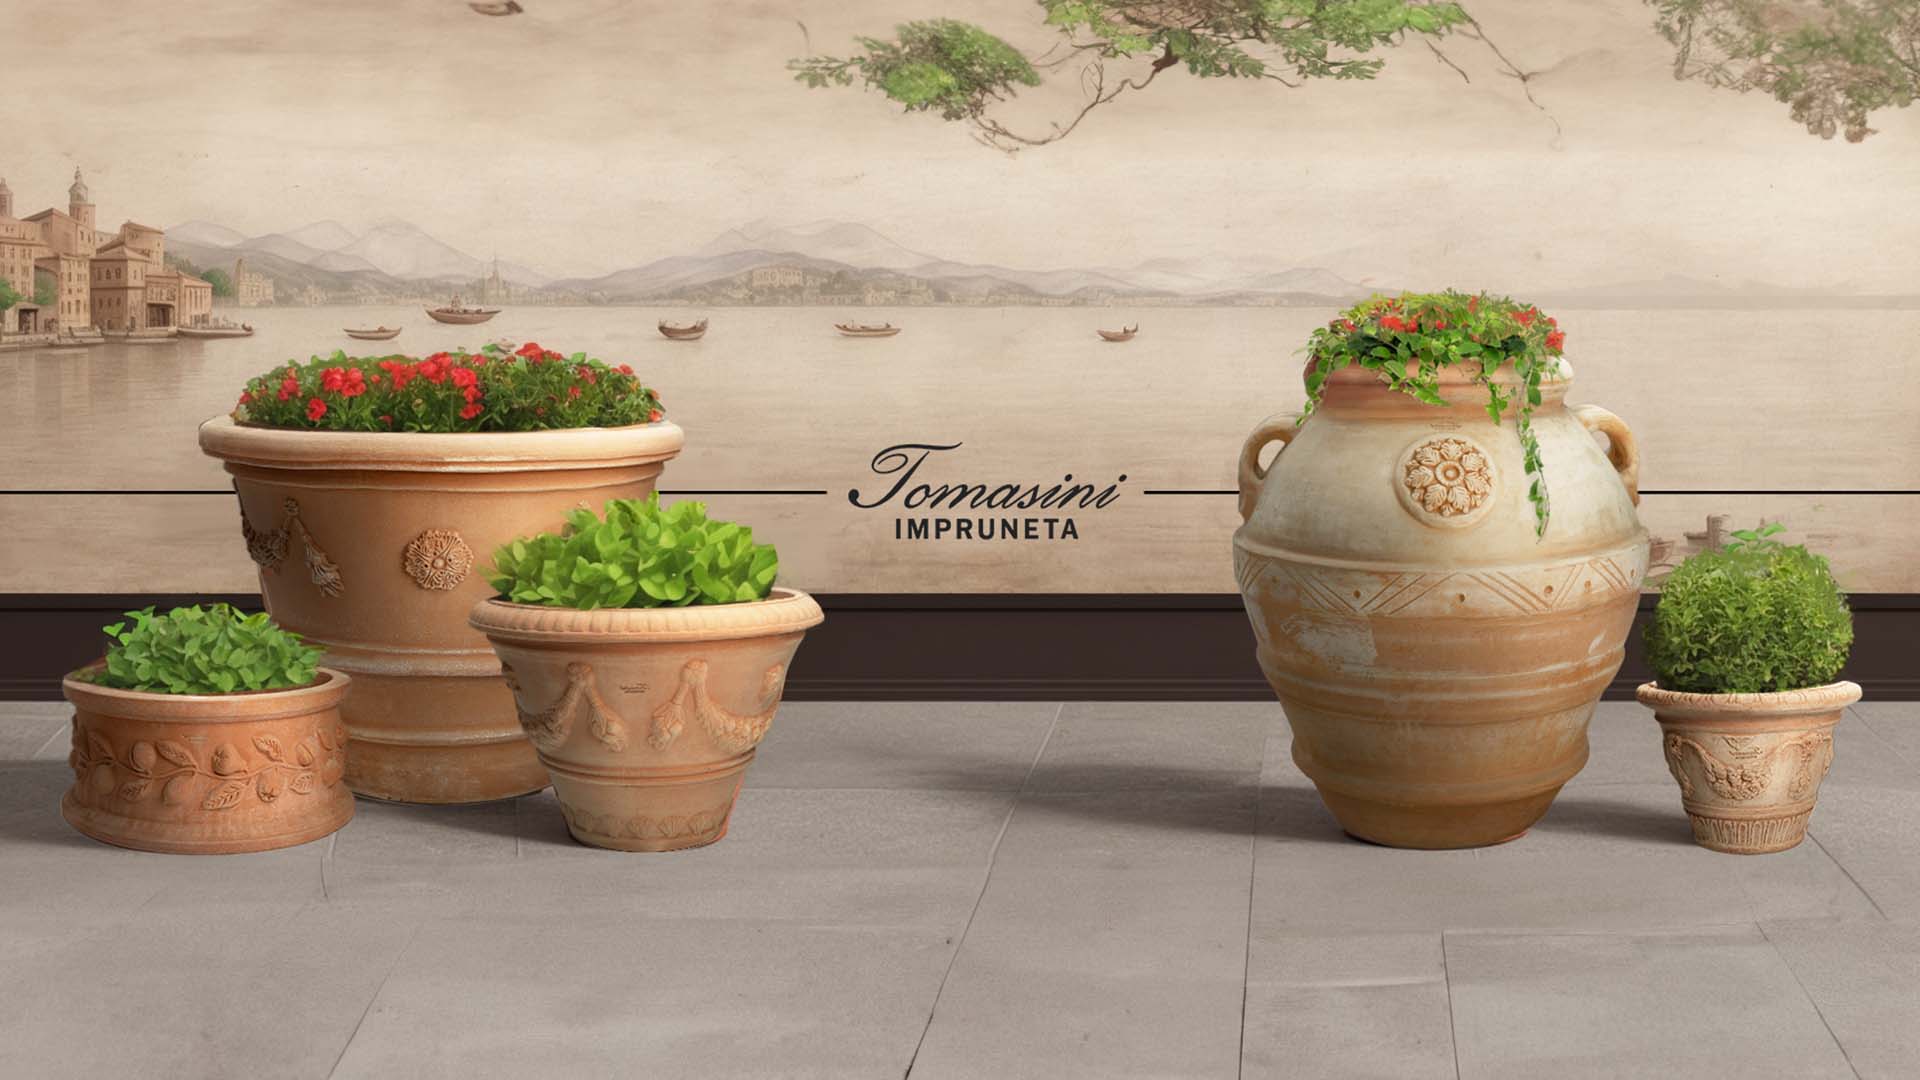 Verschiedene, reich verzierte Terrakotta-Blumentöpfe mit üppigen Grünpflanzen und leuchtend roten Blumen auf einer gefliesten Terrasse, mit einem großen Wandgemälde eines antiken Seehafens im Hintergr